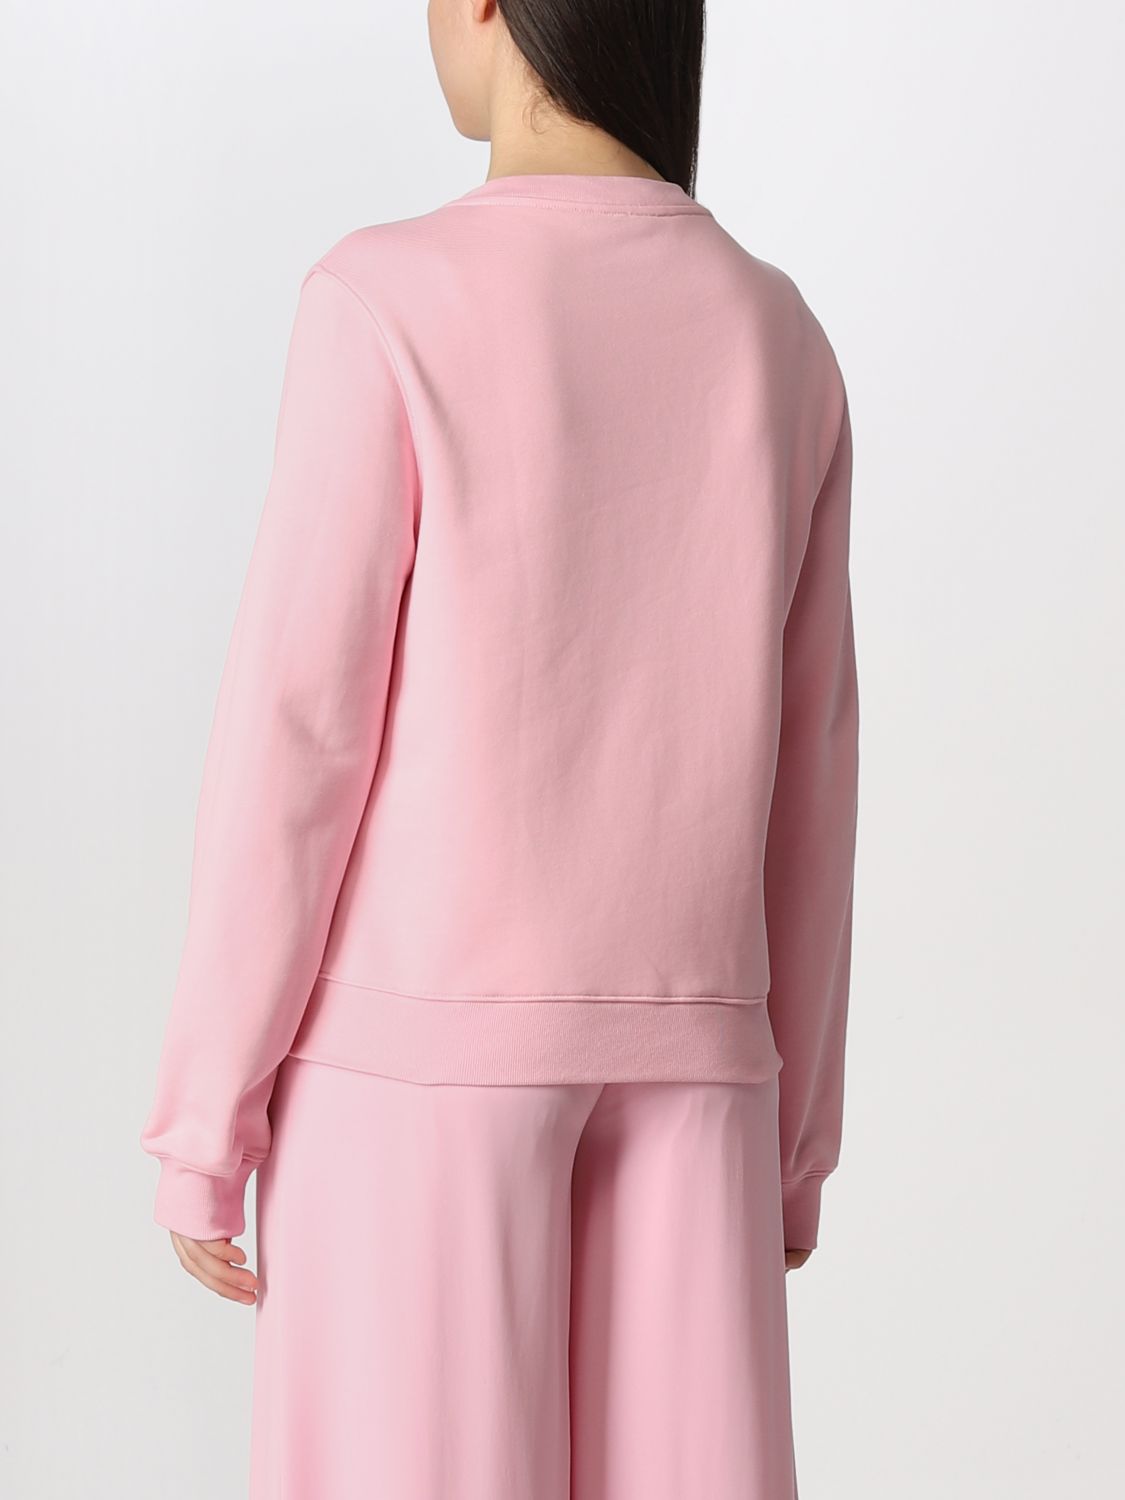 Mujer Ropa de Ropa para dormir de Pijamas Pijama de Moschino de color Rosa 